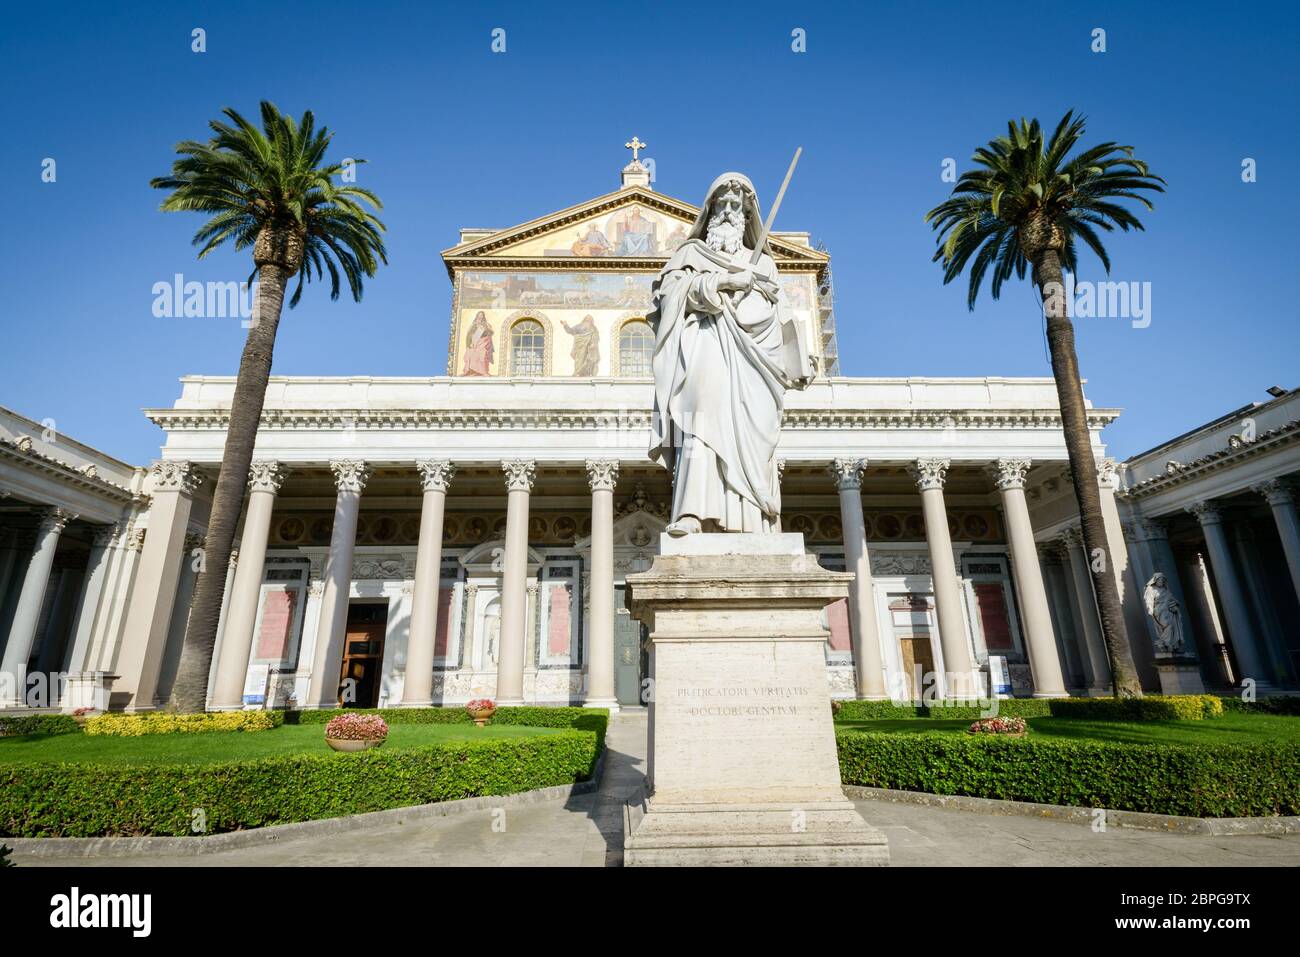 Bellissimo chiostro di San Paolo (Paolo) in Italia, Roma, statua chiesa e palme in background Foto Stock